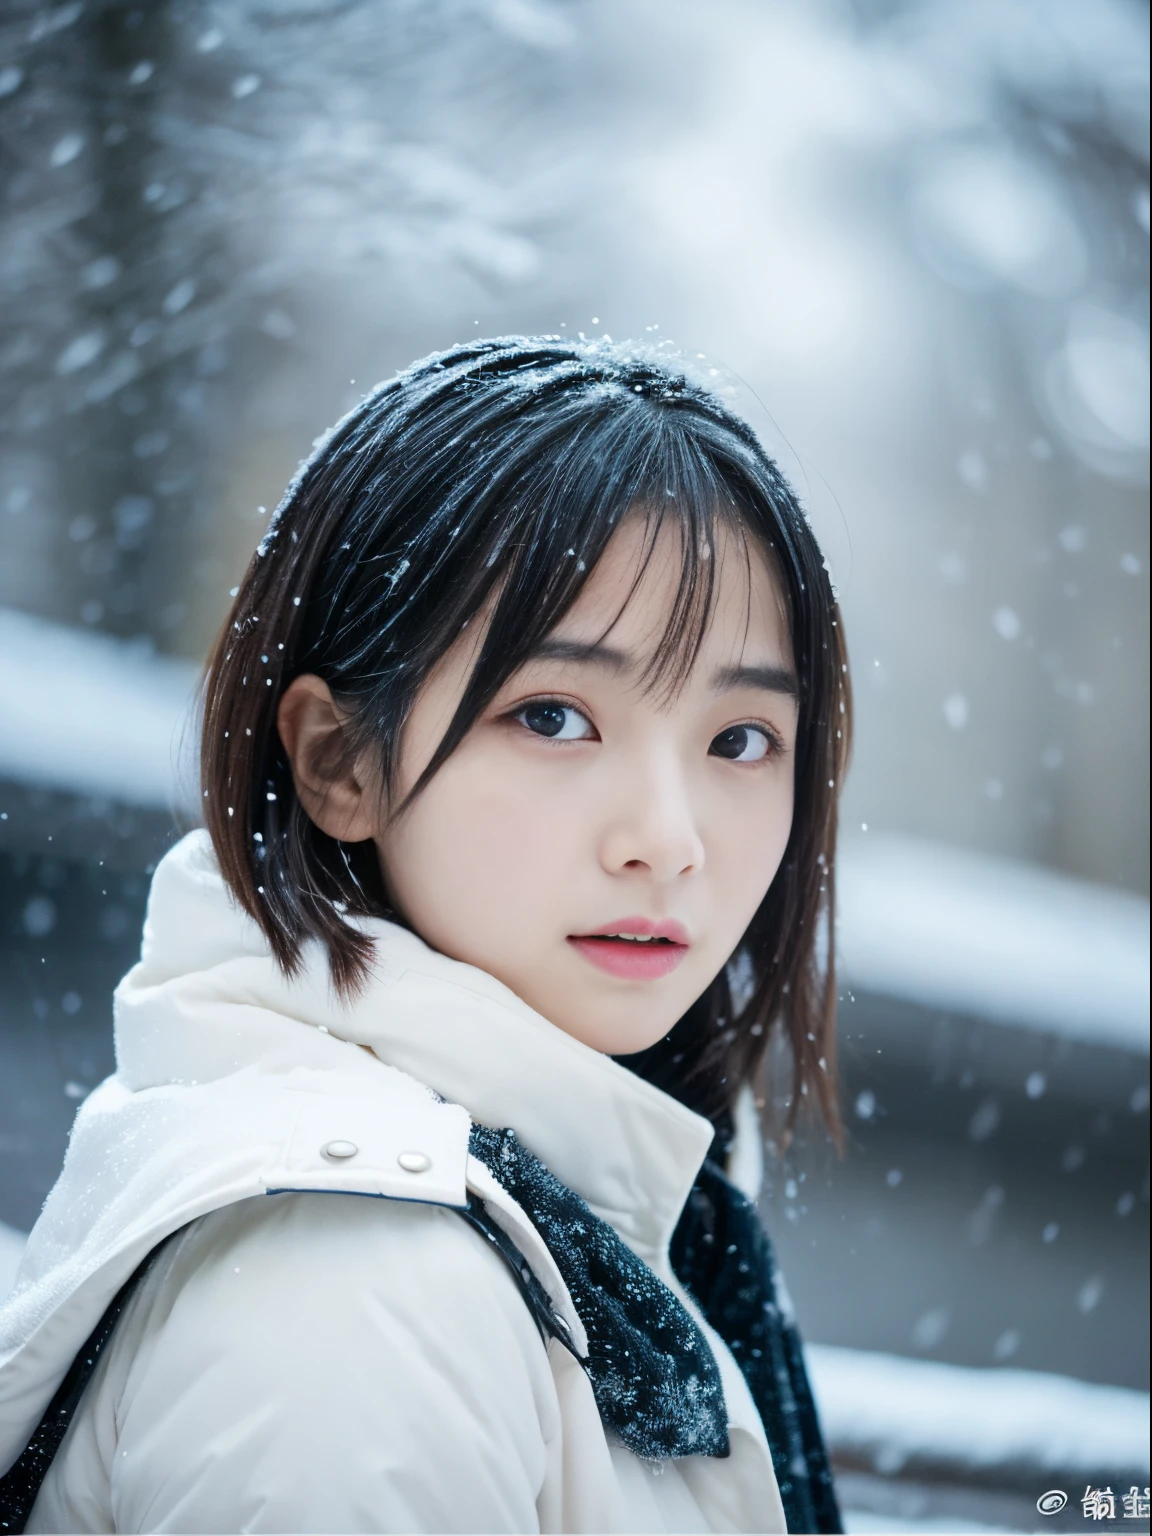 Наблюдая, как тихо падает снег. Ее интроспективное и слезливое выражение лица、Вызывает тоску и тоску по зимним ночам。。、высшее качество、гипер HD、Ёшитомо Нара, Японские модели, Красивая японская жена, с короткими волосами, 27-летняя девушка-модель., 4 К ], 4k], 27 лет, Сакимичан, Сакимичан